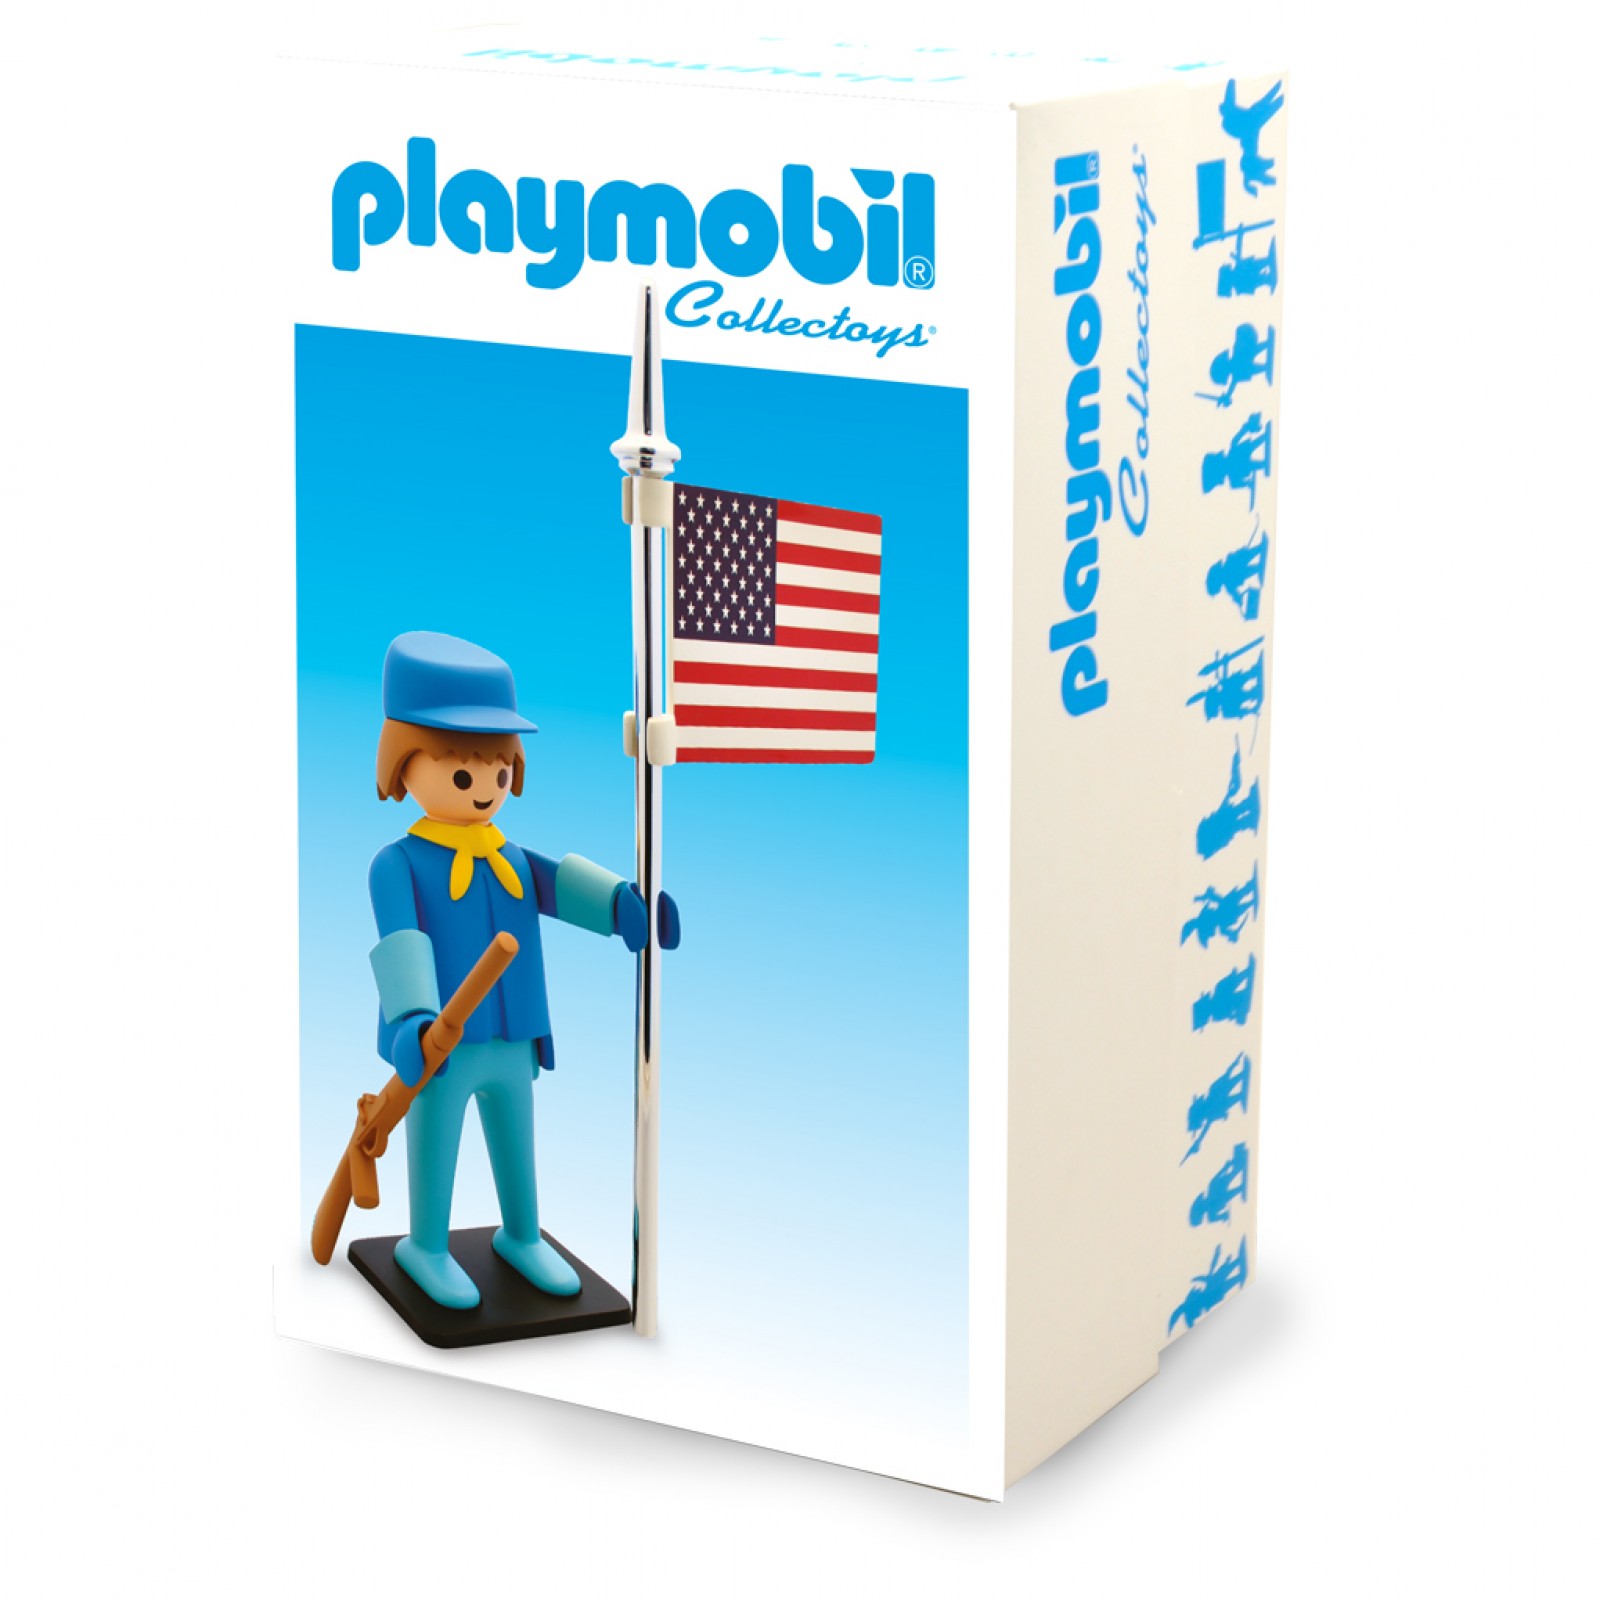 Playmobil géant 1m50 – LE SITE DES FANS DE PLAYMOBIL